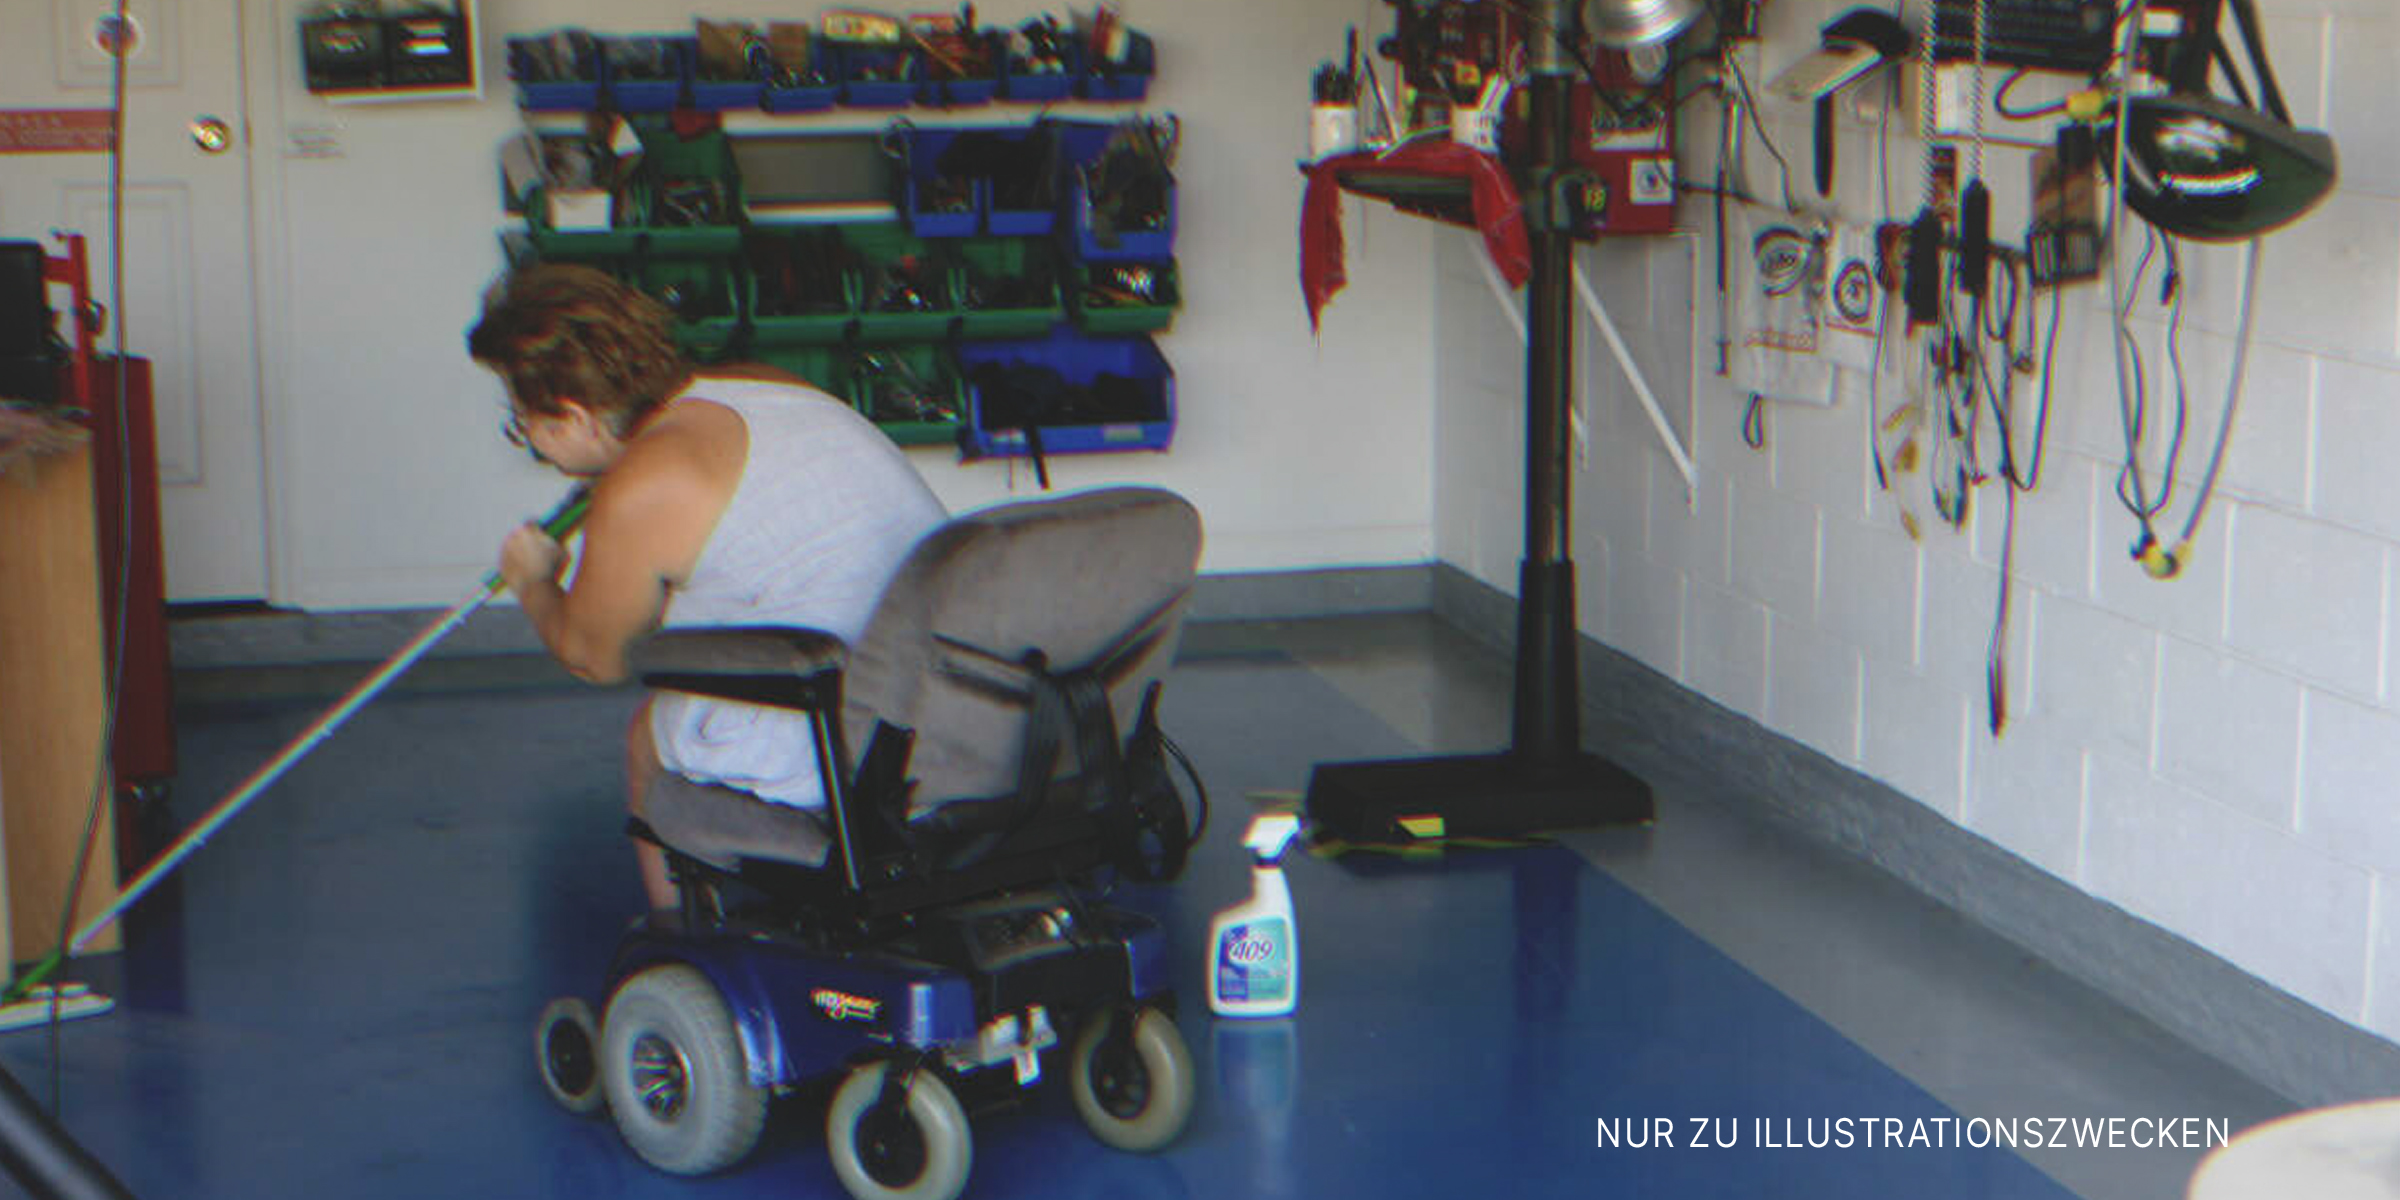 Eine Frau im Rollstuhl putzt den Boden. | Quelle: Flickr